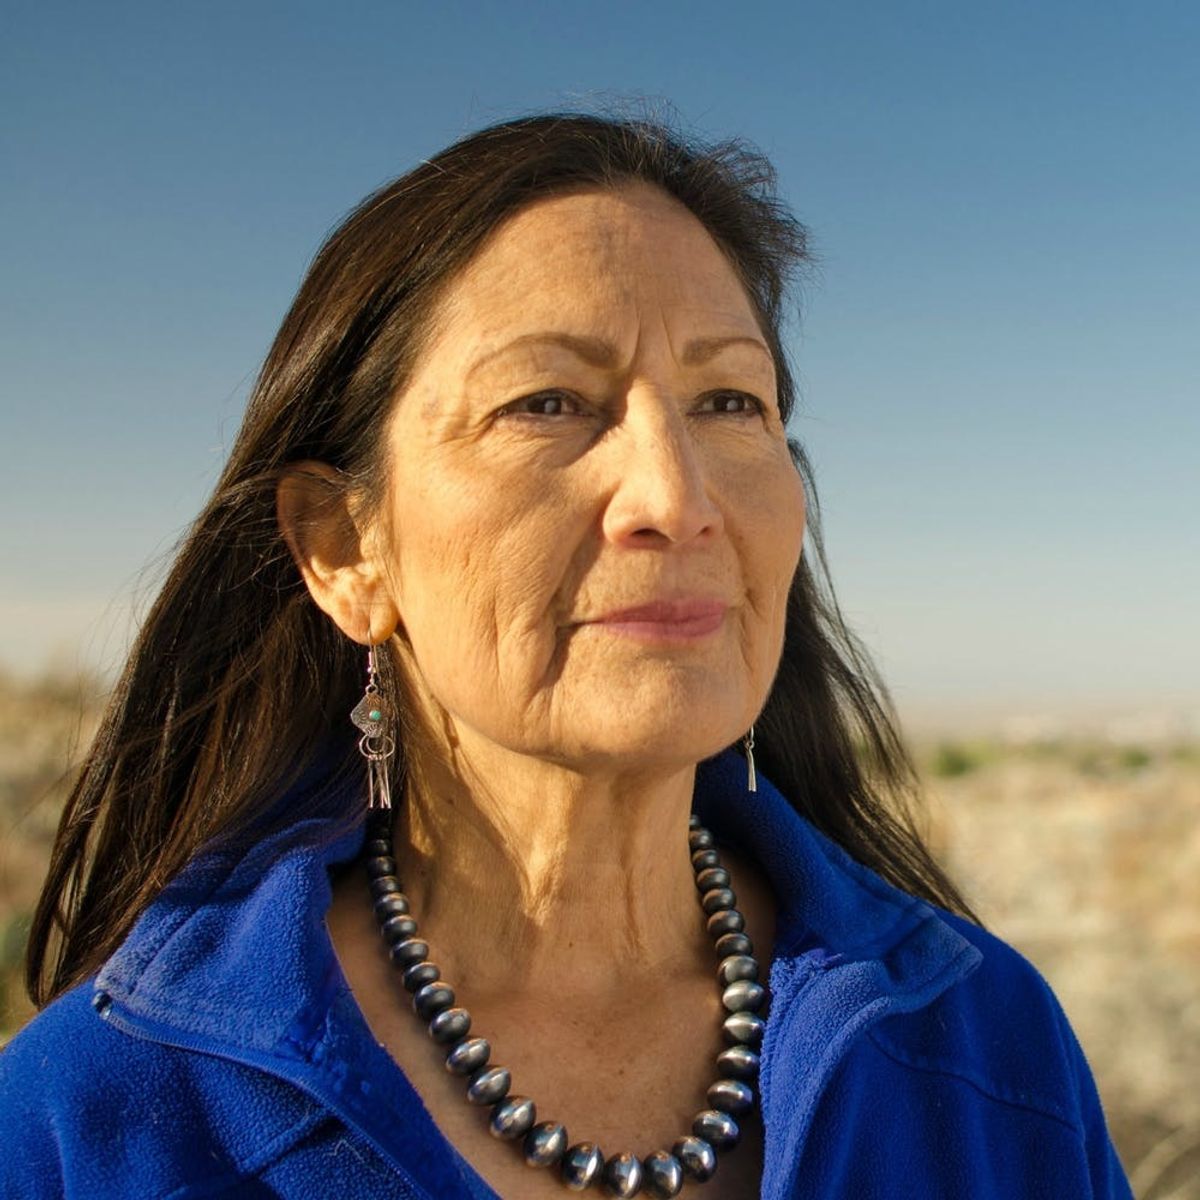 Deb Haaland Wore Traditional Pueblo Regalia to Be Sworn into Congress